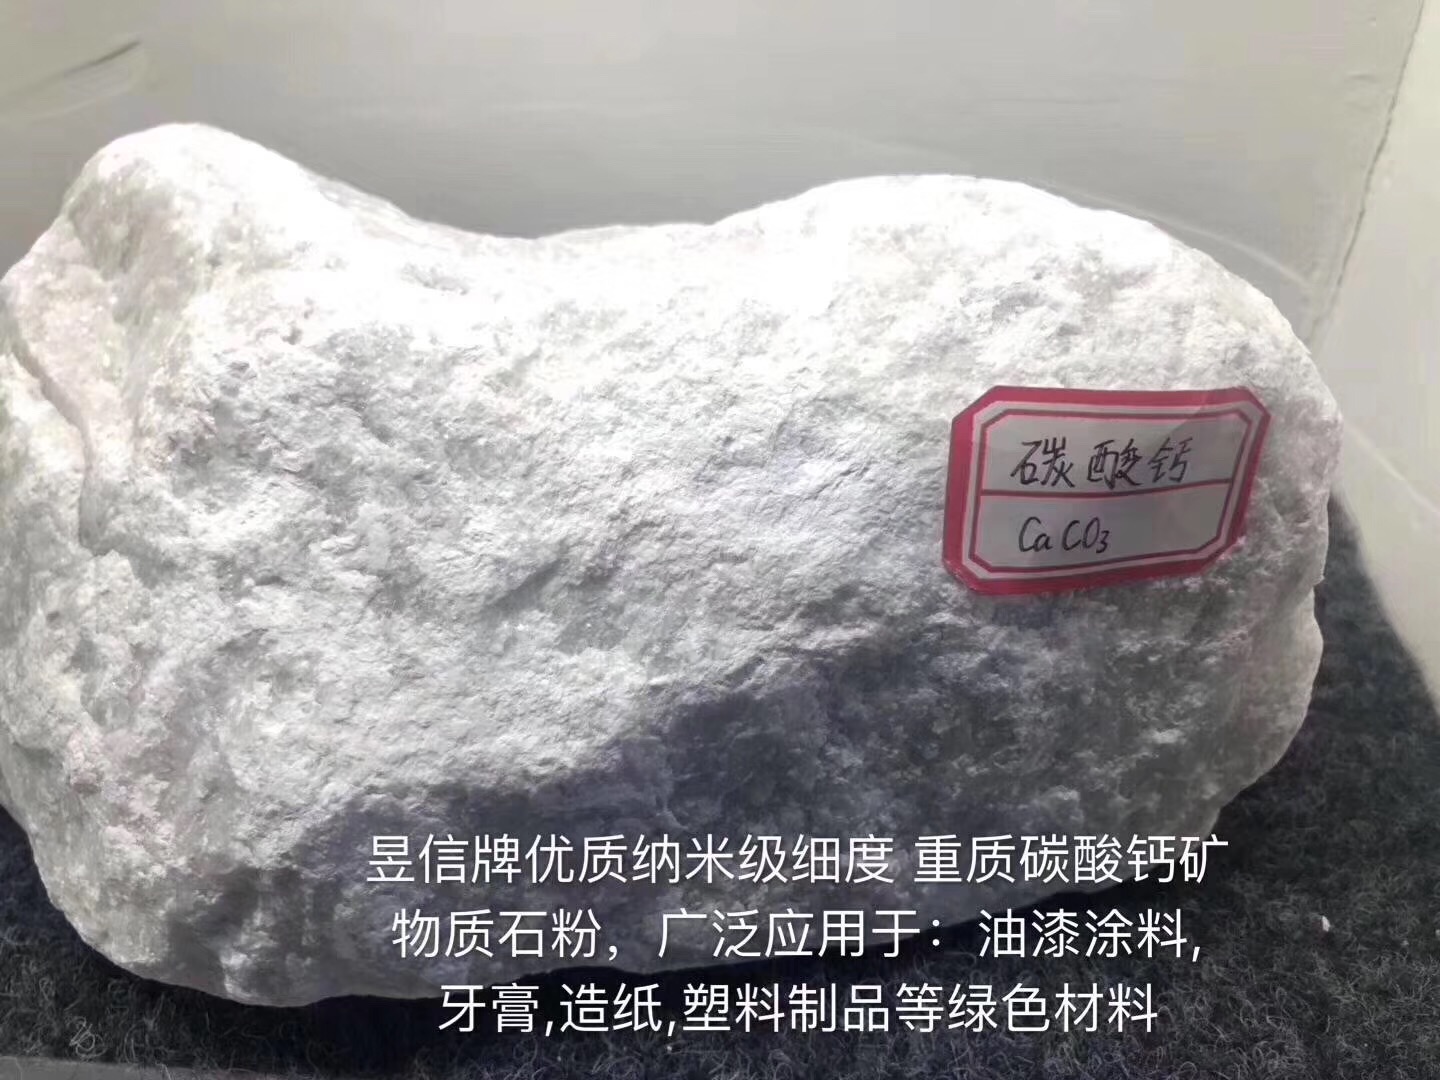 河南省南阳市南召县优质碳酸钙生产企业南阳占一实业